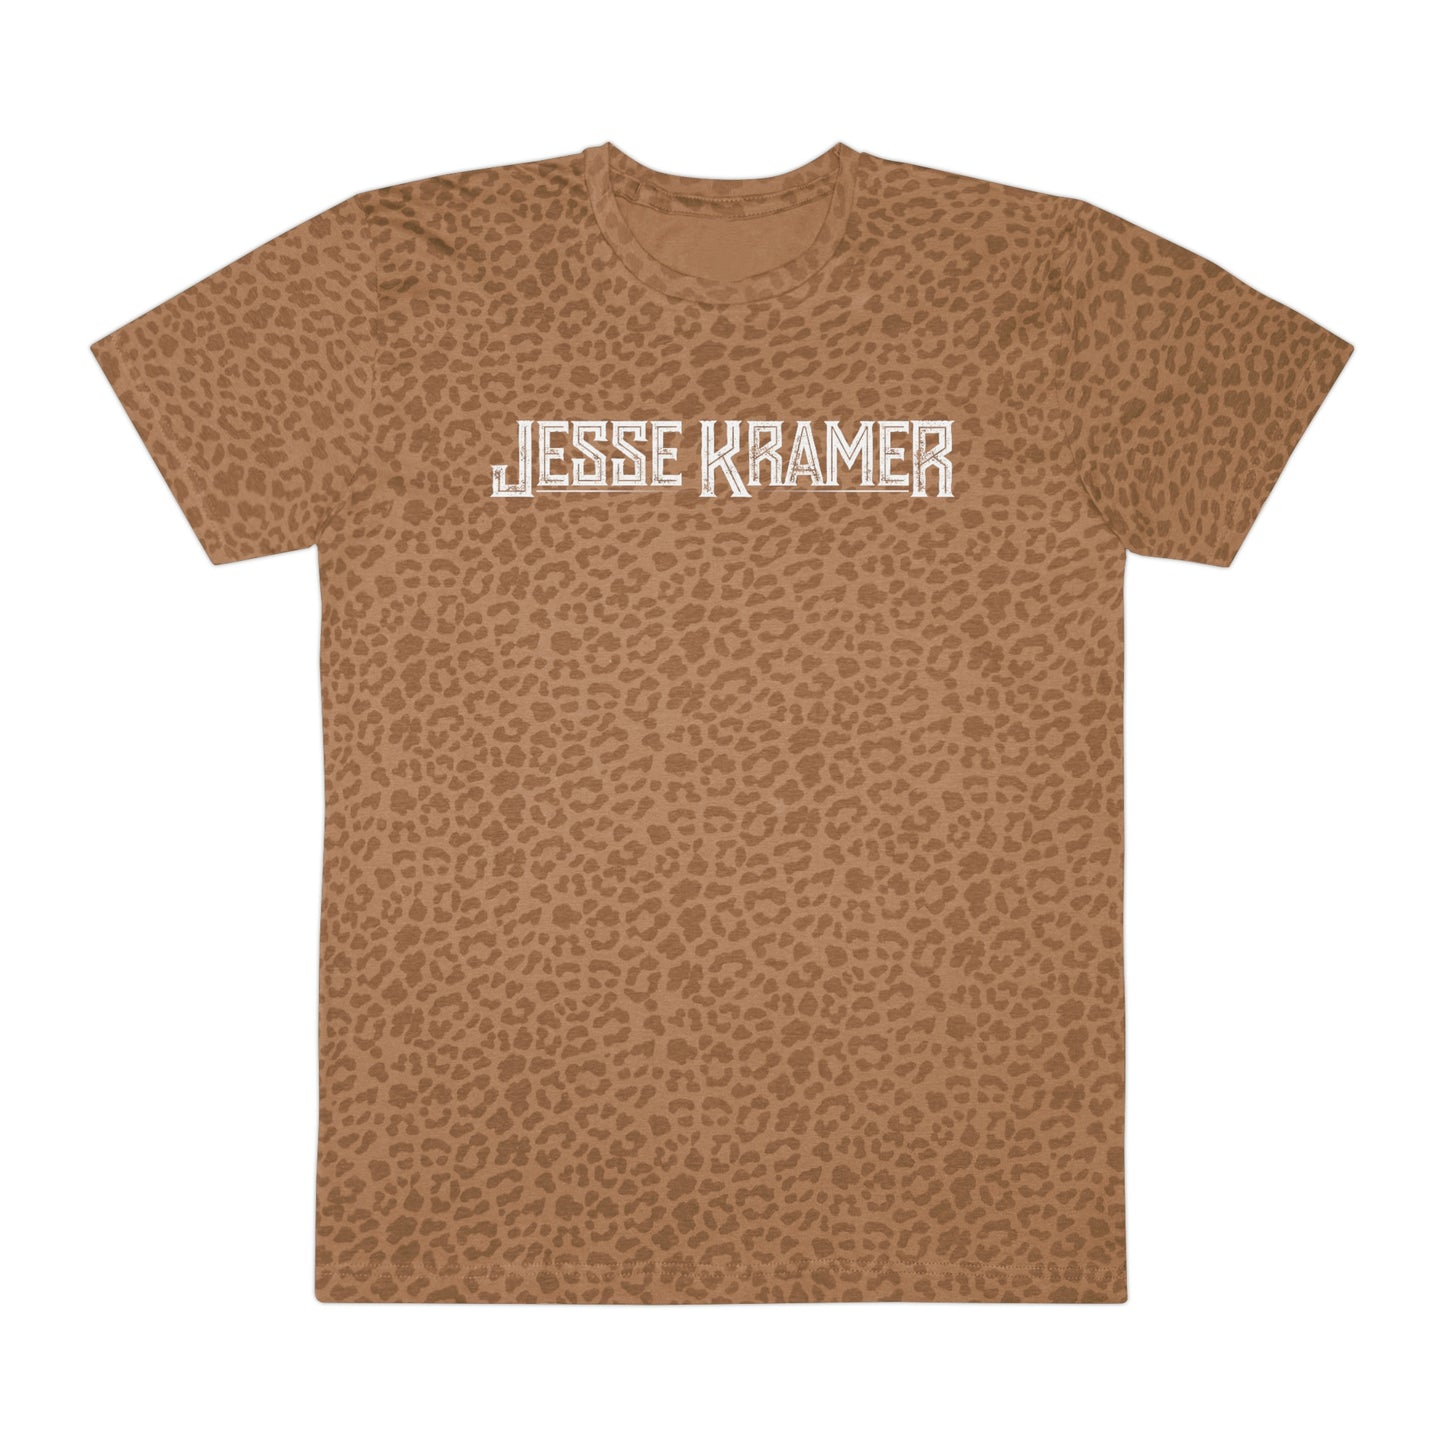 Jesse Kramer Get Wild Tee